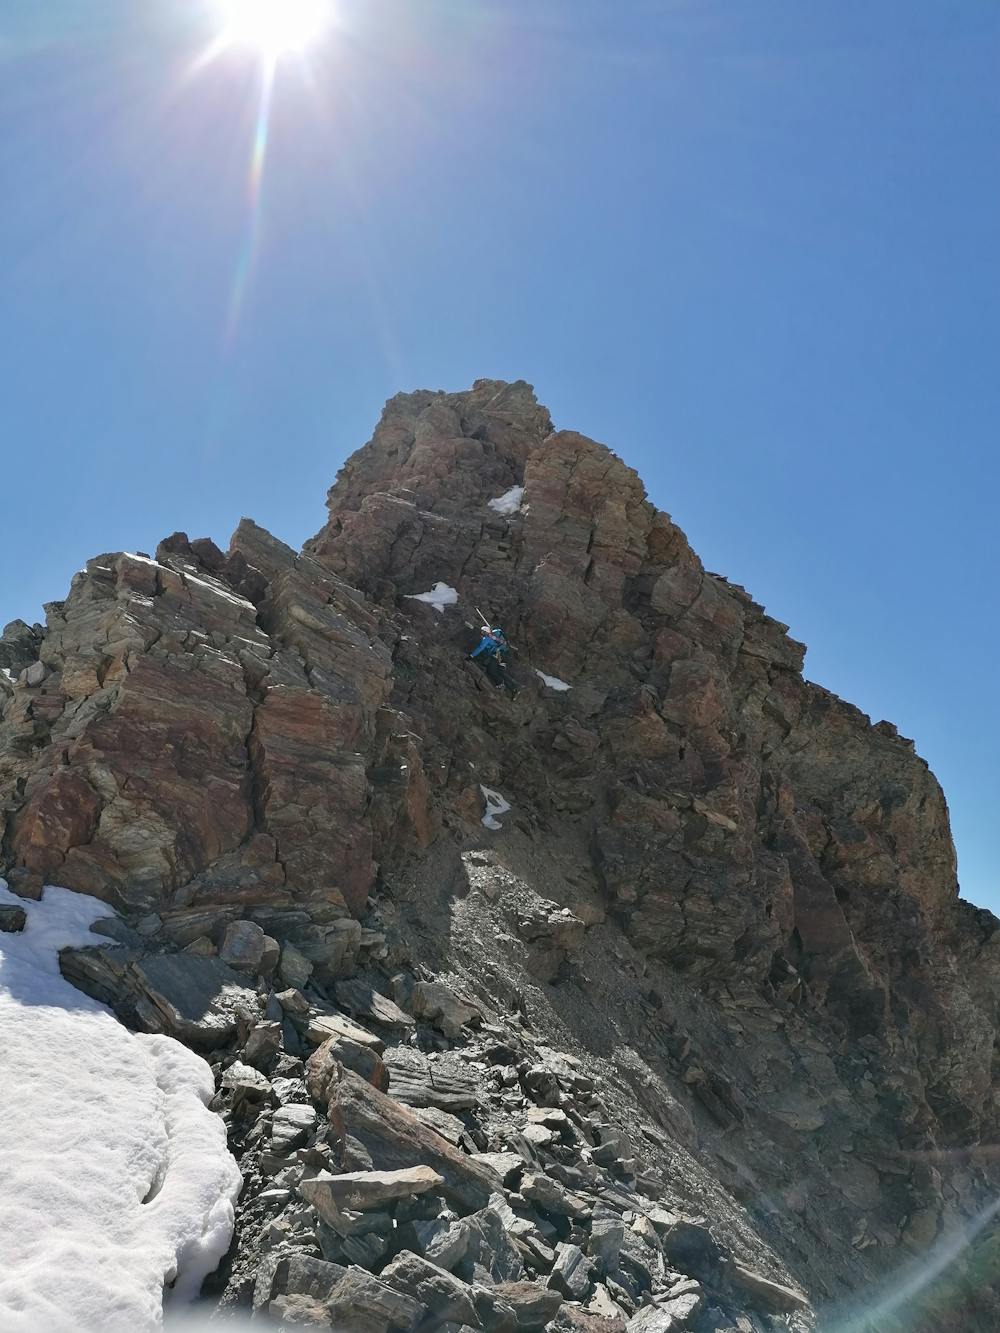 traversando in cresta, poca neve e arrampicata agile sulle roccette